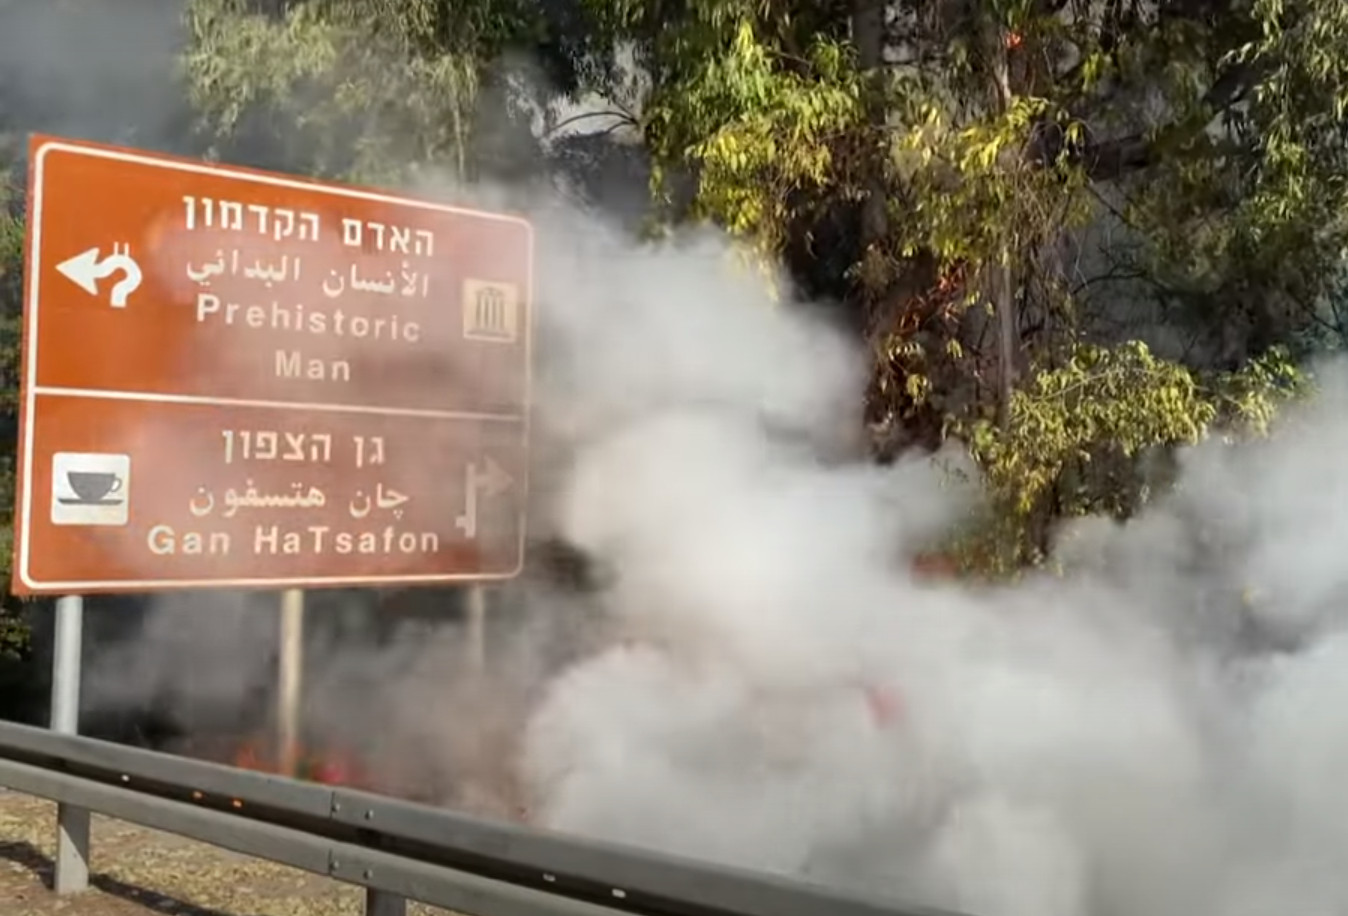 Ισραήλ: Οι πυροσβέστες συνεχίζουν τη μάχη με τις φλόγες – Χιλιάδες στρέμματα έχουν ήδη καεί